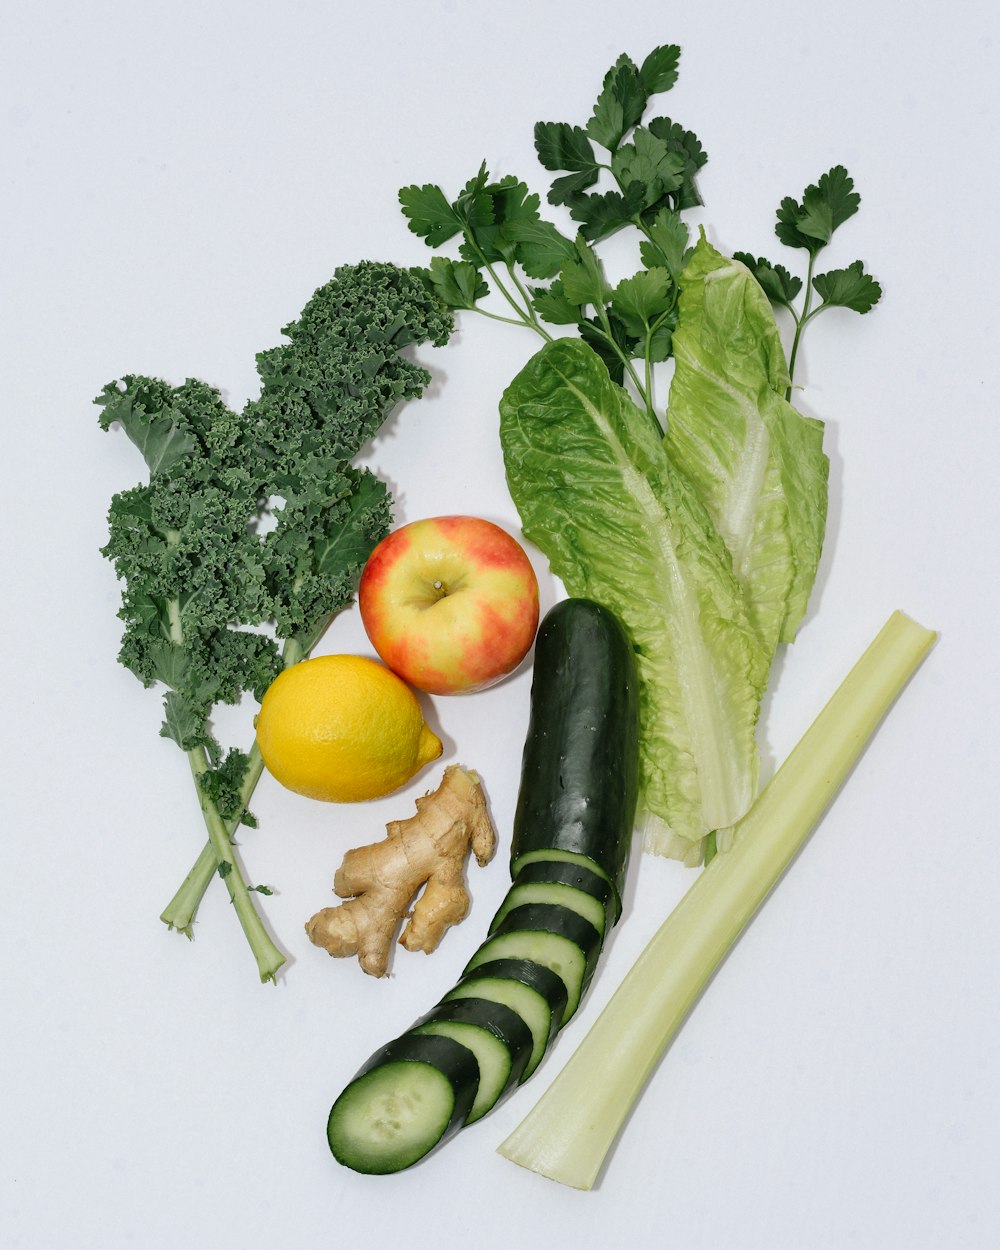 Fotografía plana de verduras